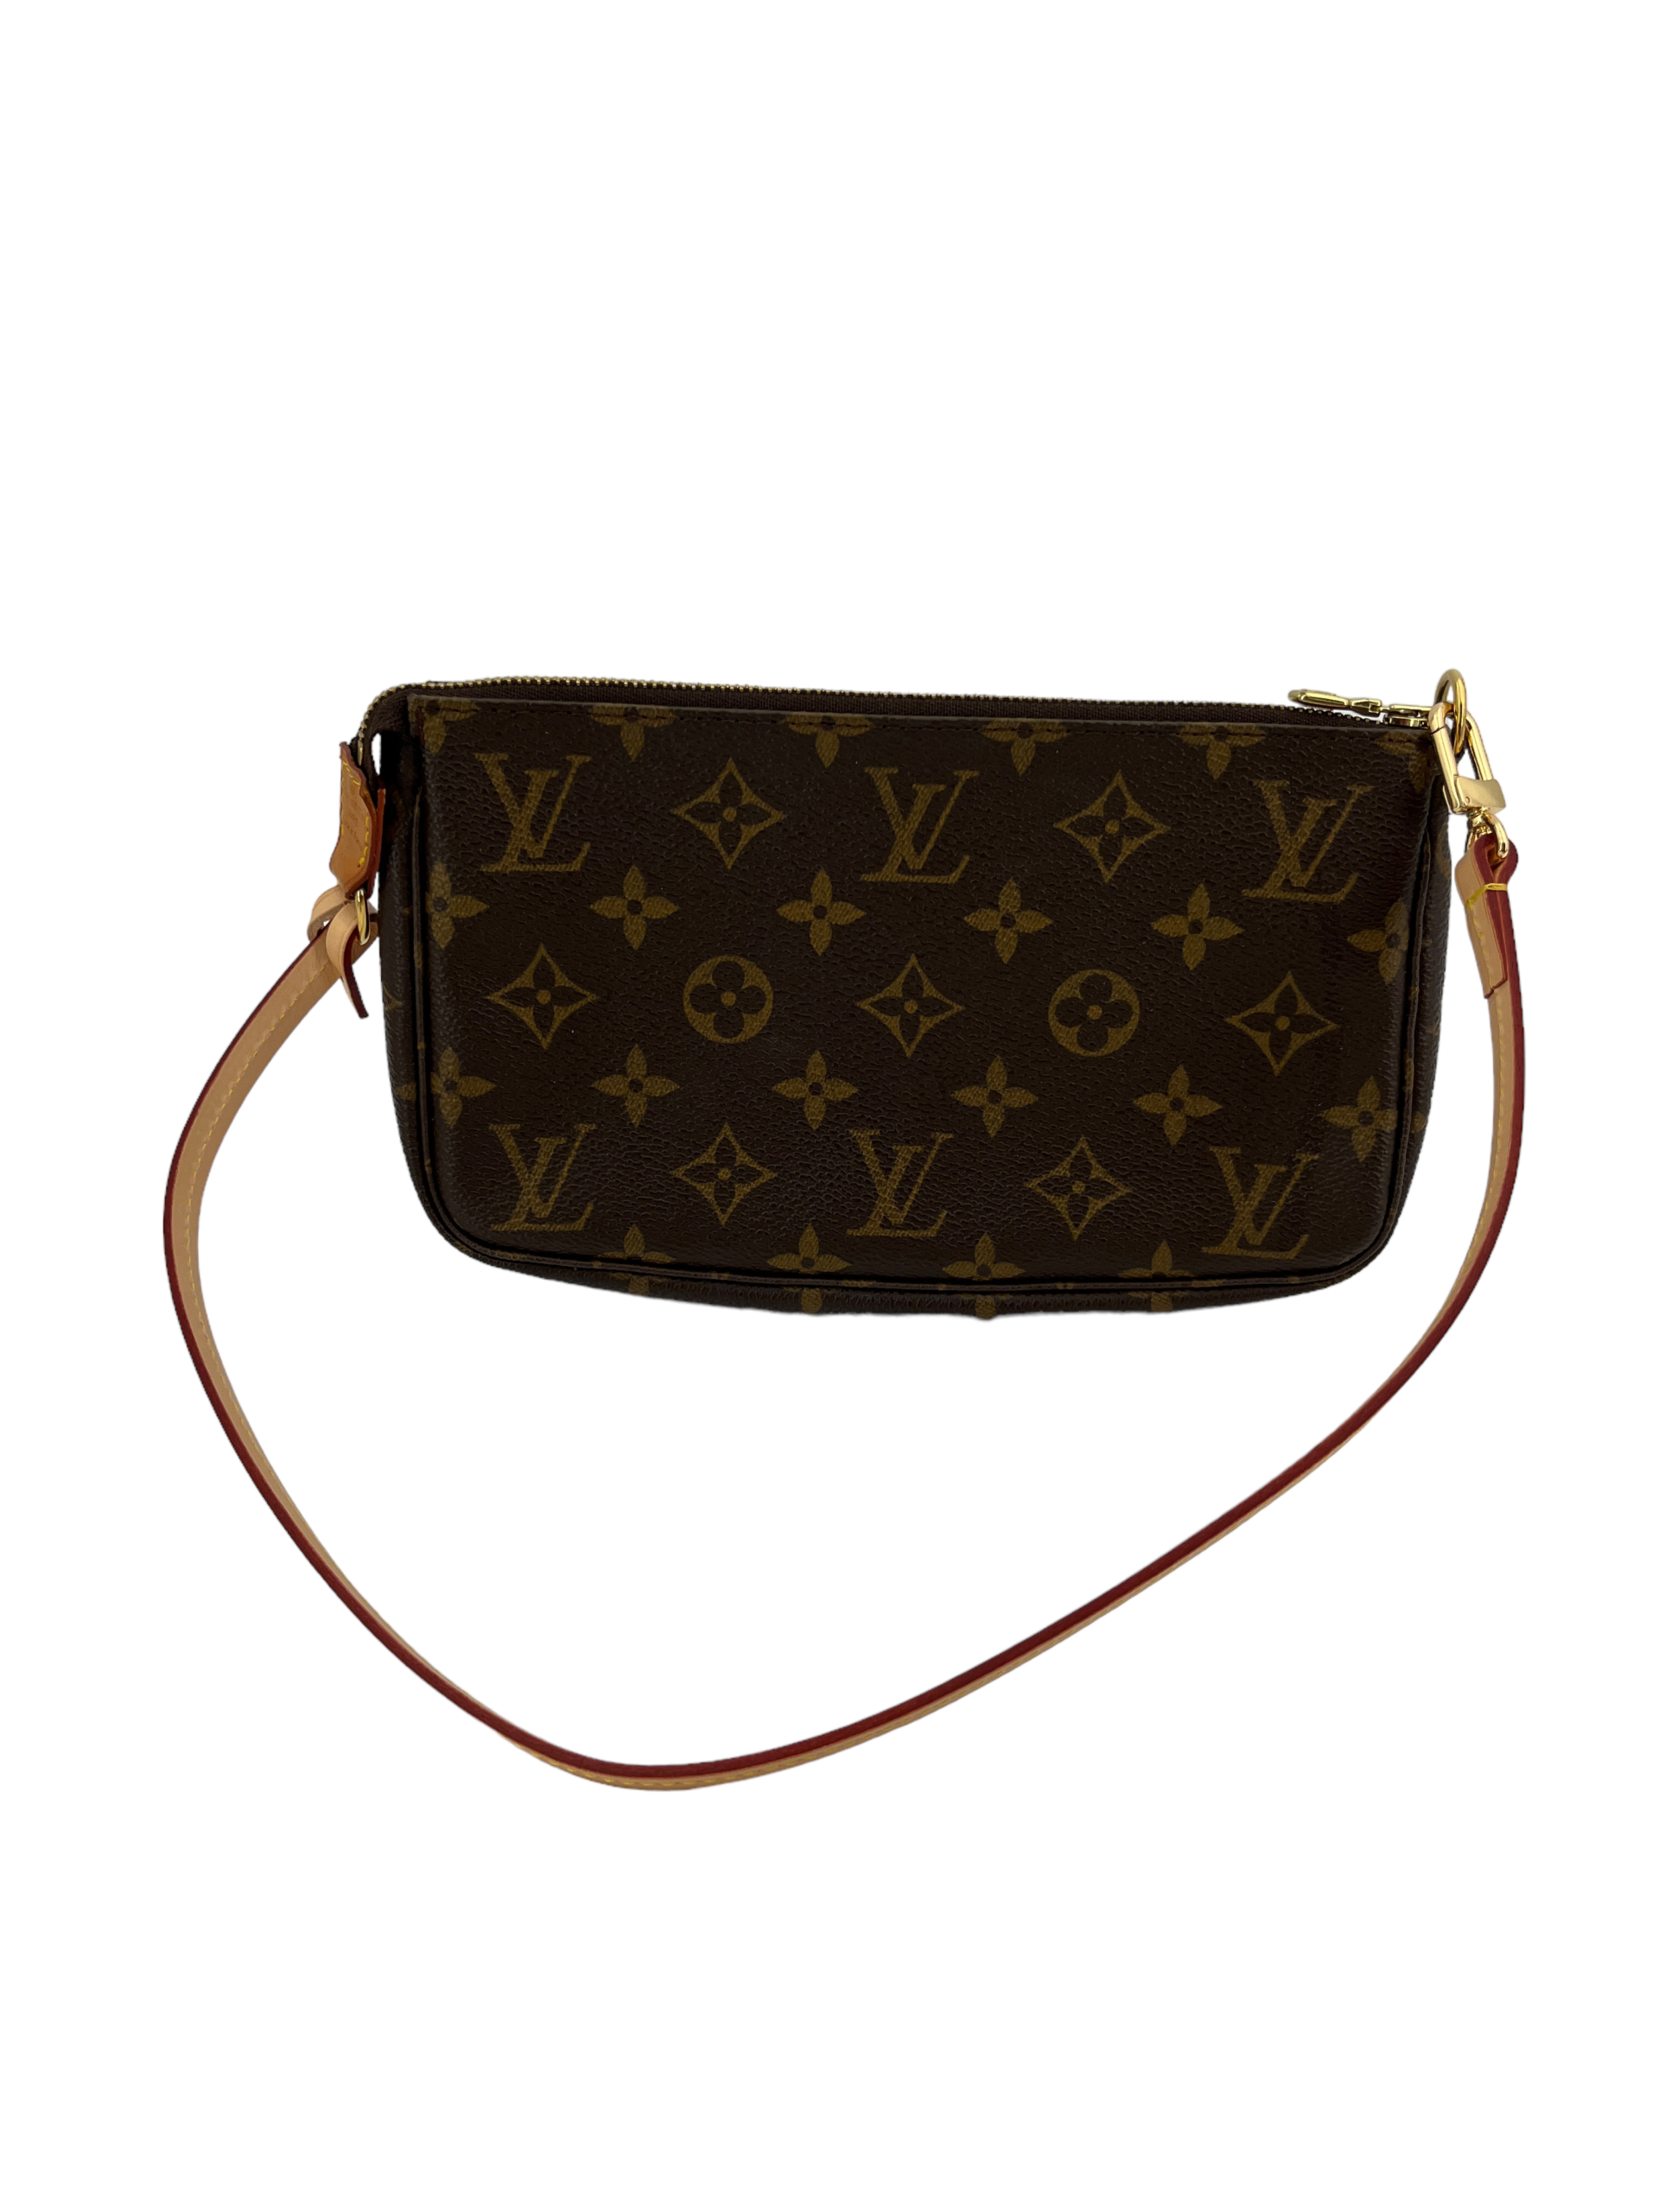 Louis Vuitton Multi Pochette Accessoires Shoulder Bag Black/Cream Leather  for sale online | eBay